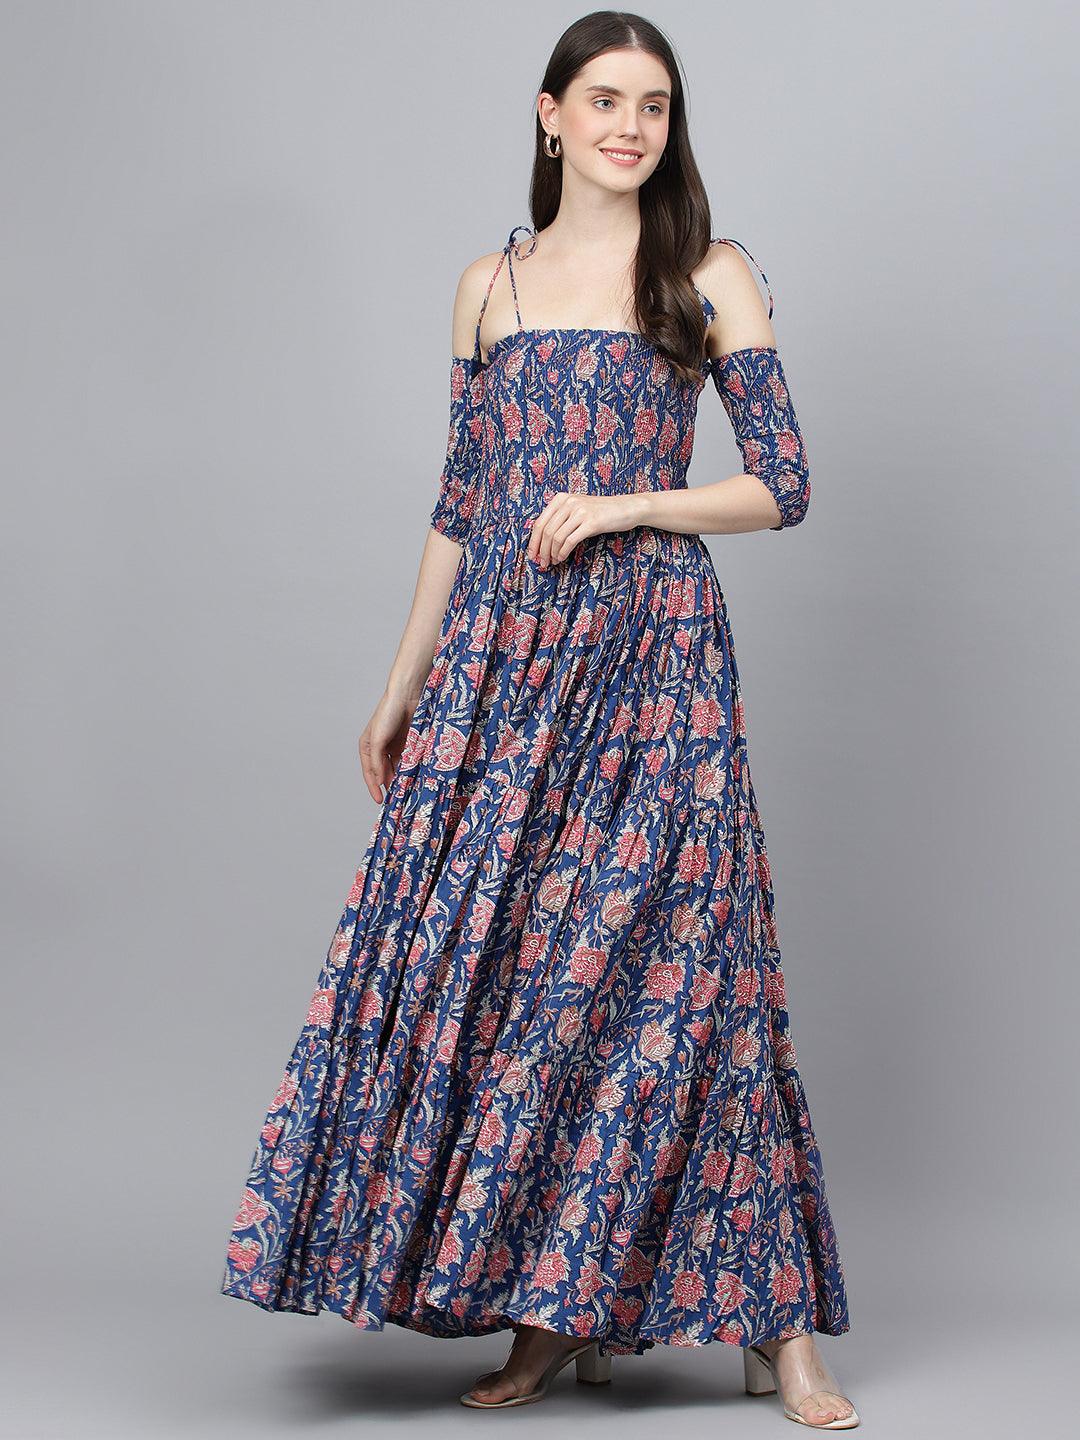 Divena Blue Floral Printed Shoulder Strips Flared Long Dress - divena world